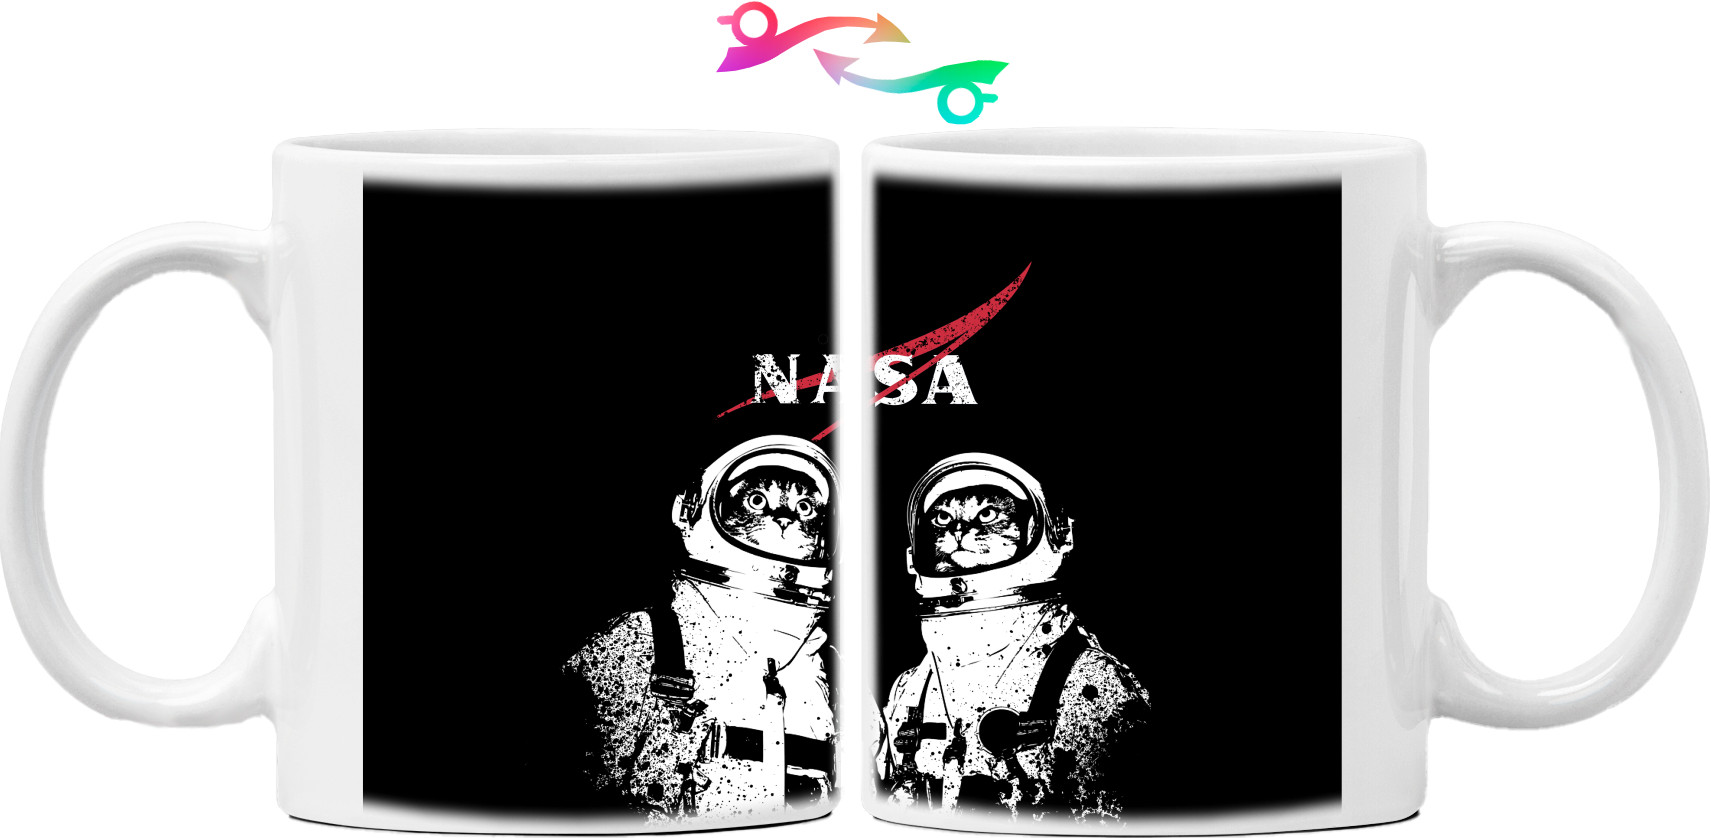 NASA [5]